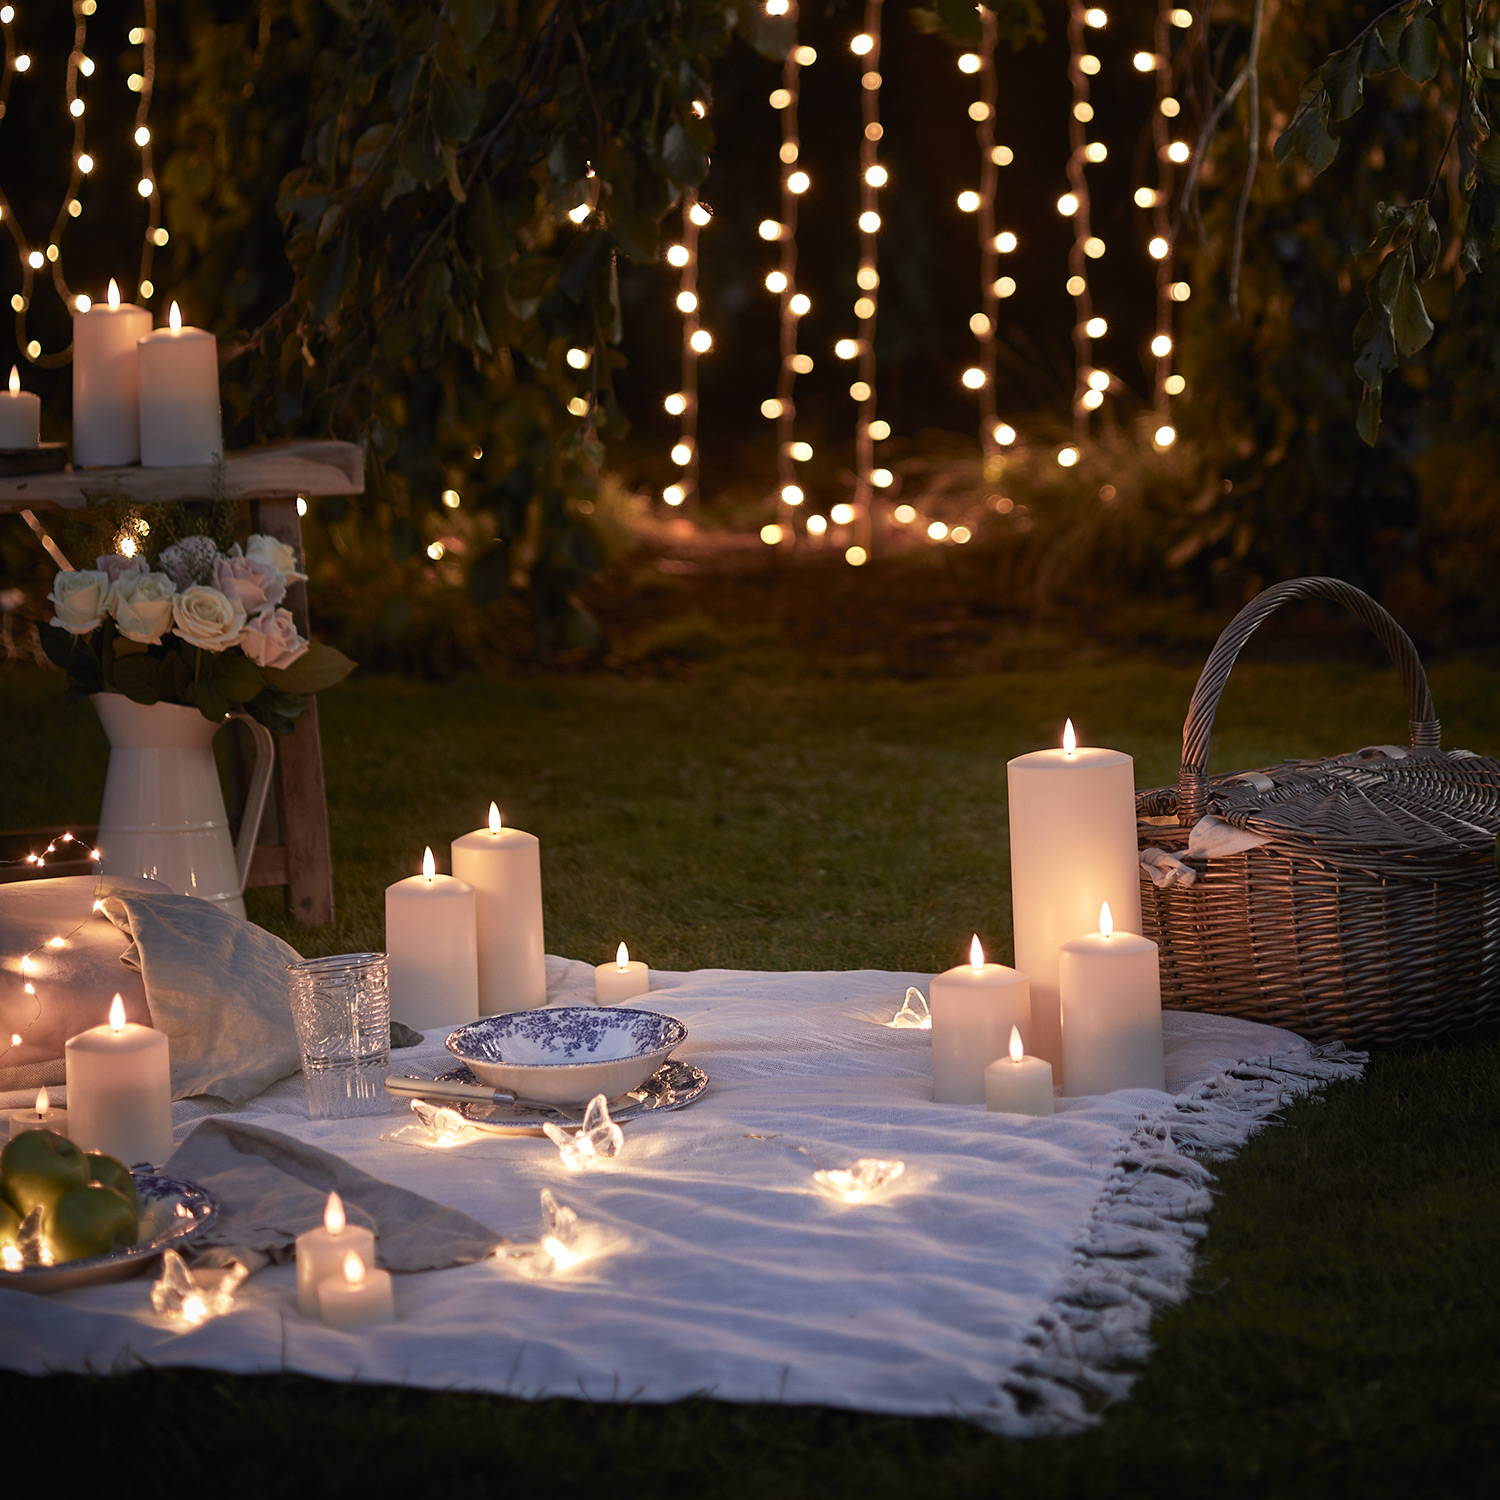 Gros plan sur un pique-nique nocturne avec des bougies LED, des guirlandes lumineuses et des rideaux lumineux.